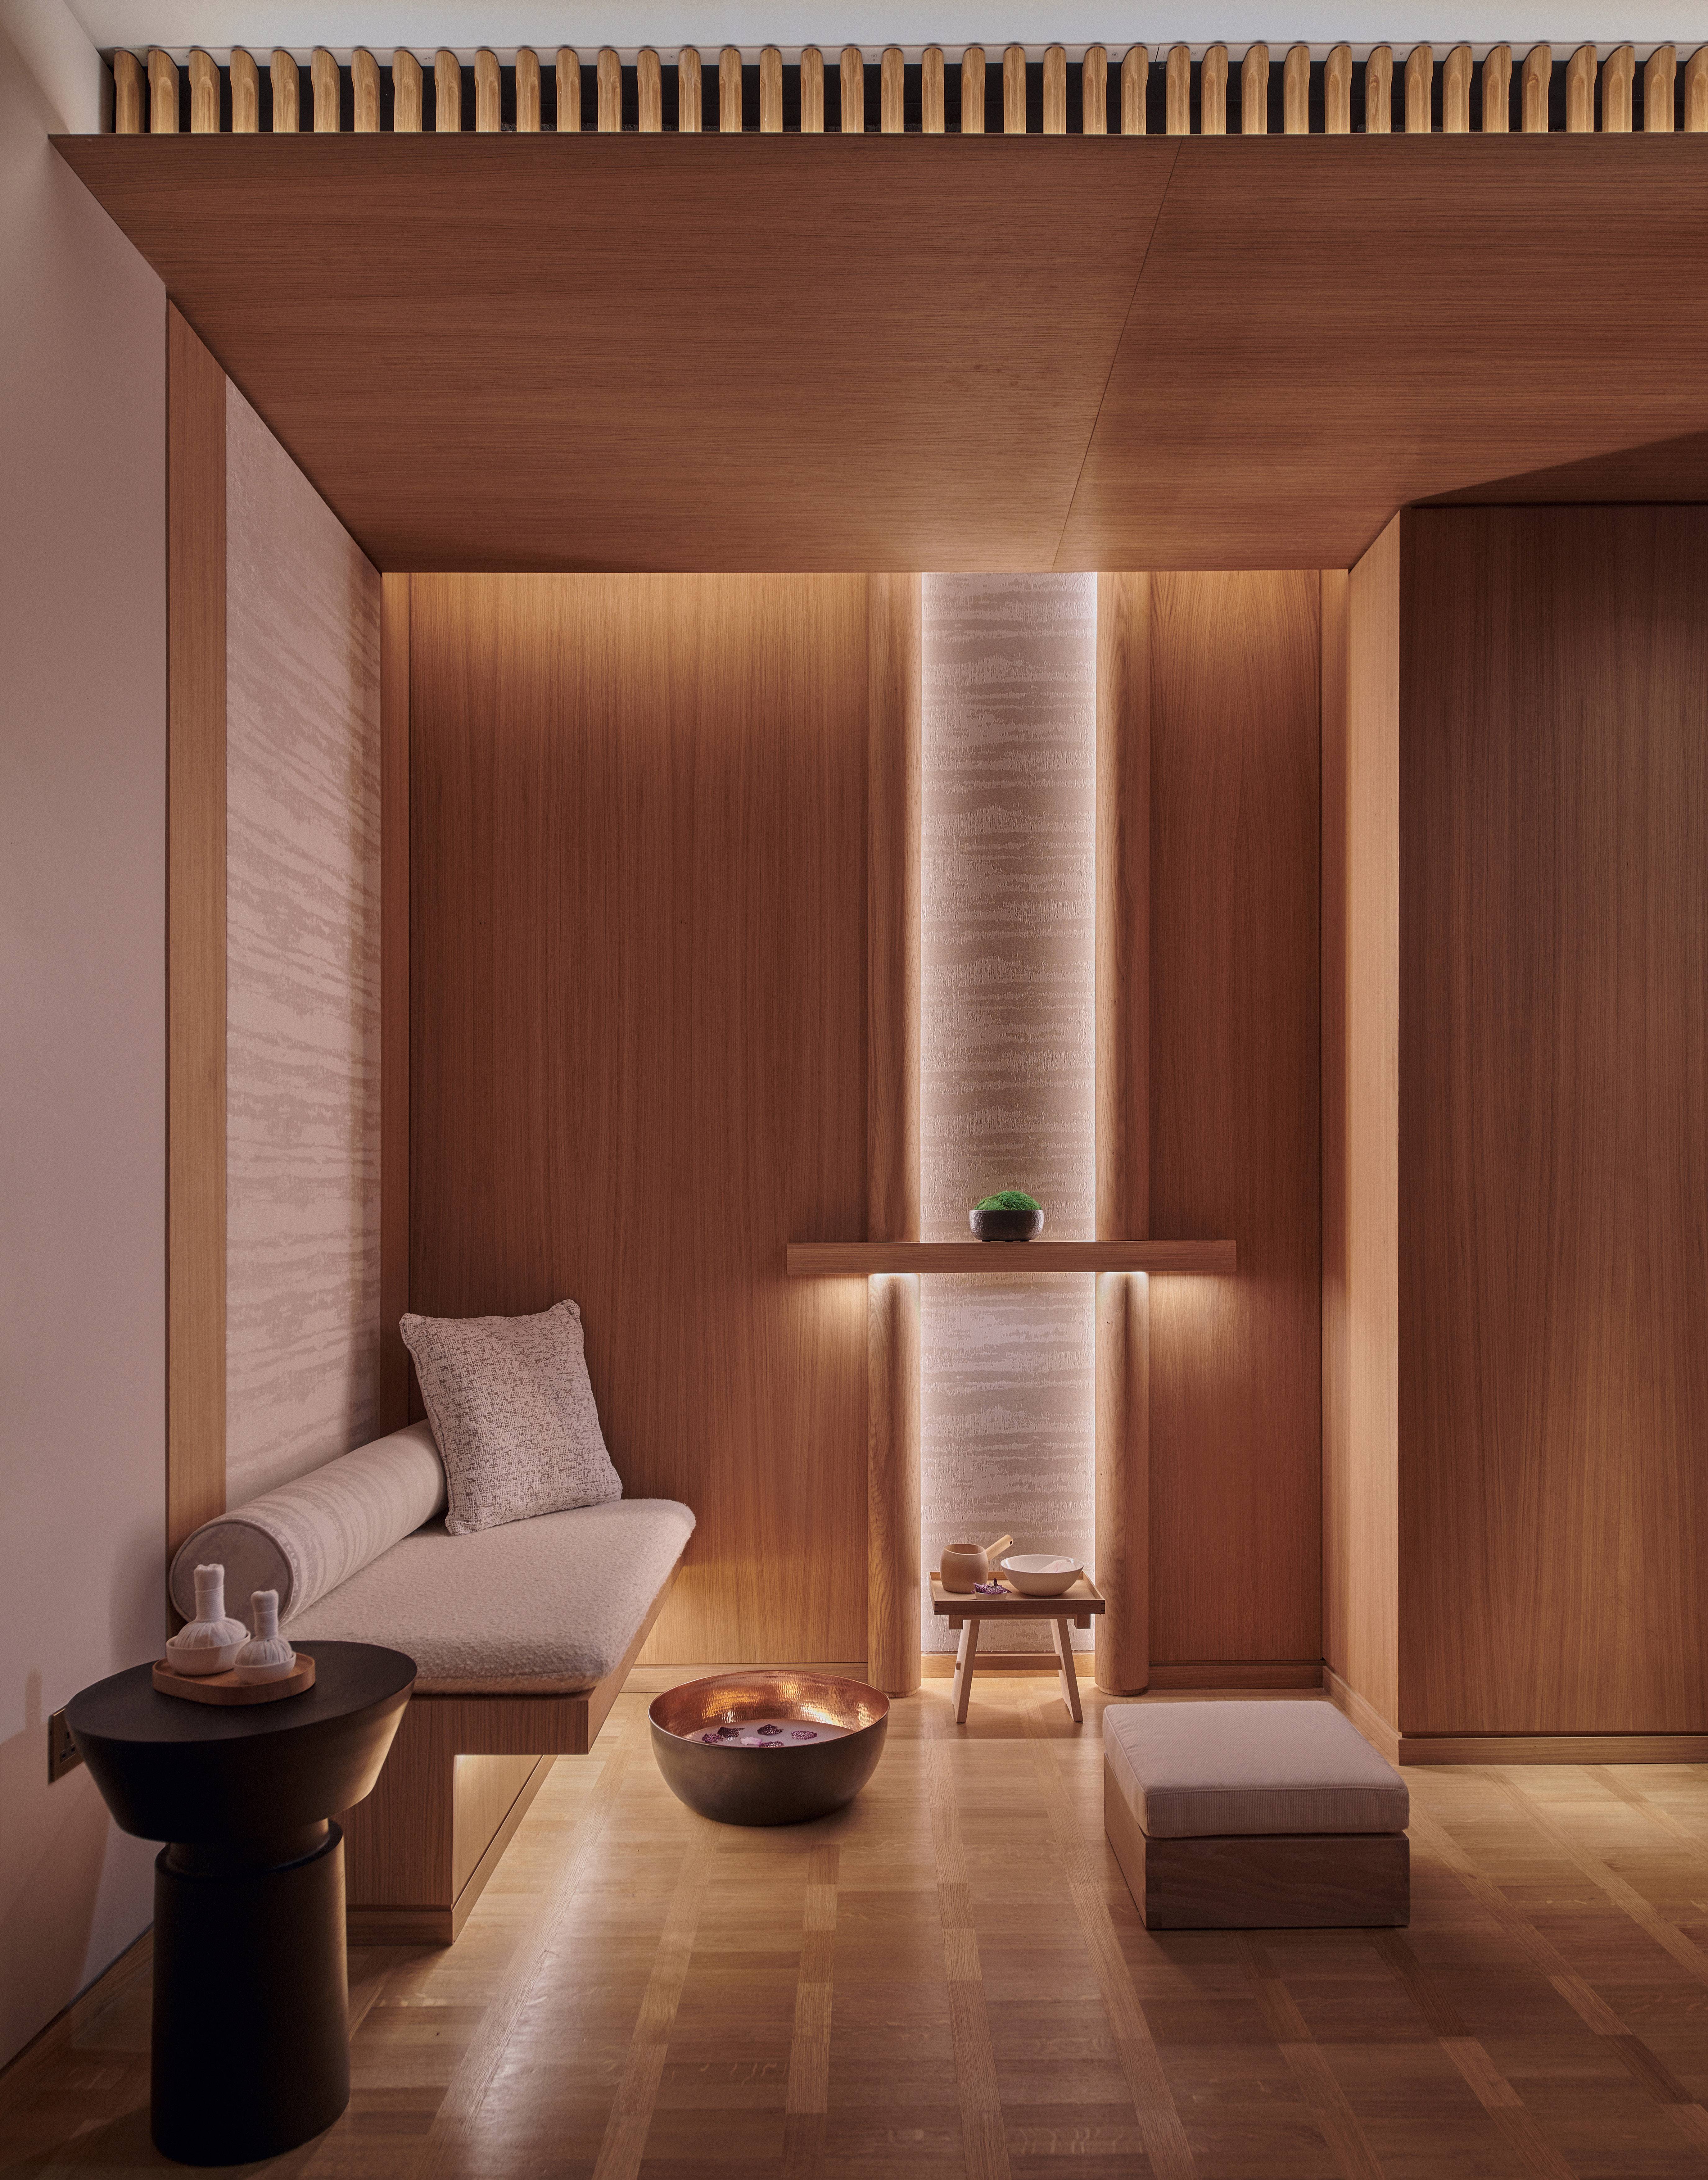 El spa dispone de siete cabinas de tratamiento, de inspiración japonesa, cuyas paredes paneladas en maderas naturales contribuyen a su atmósfera relajada. - imagen 3